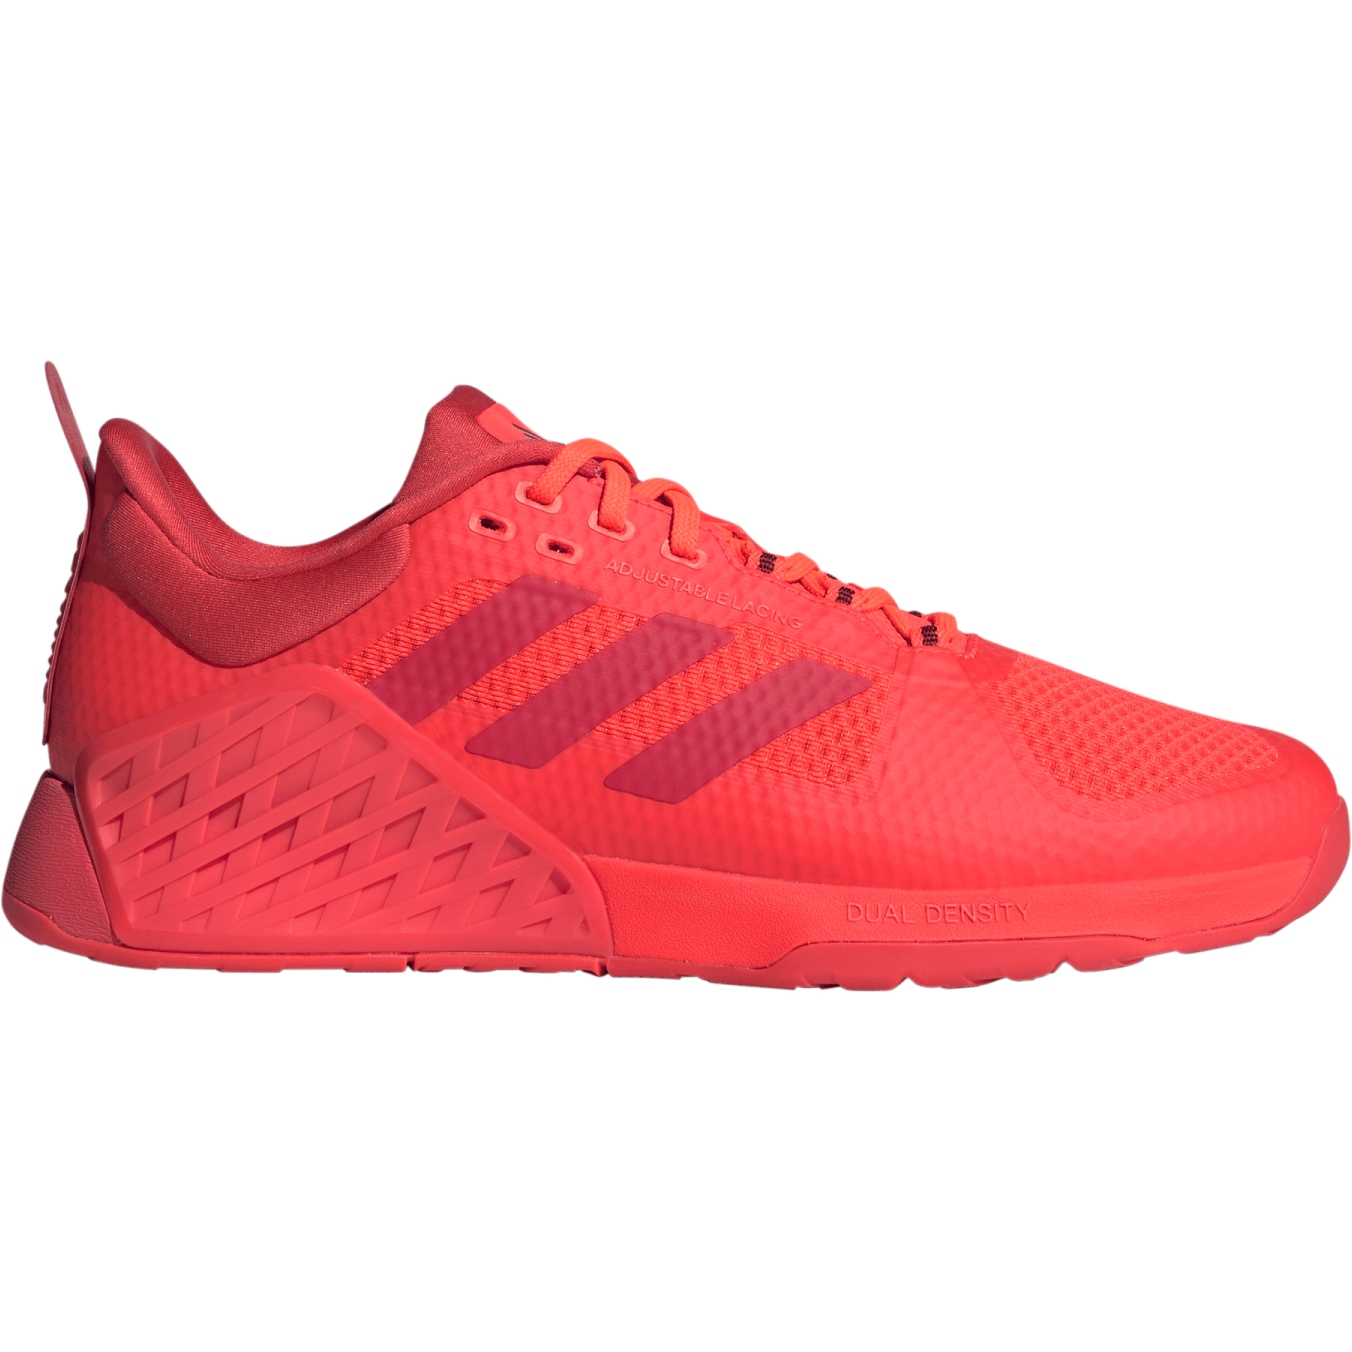 Produktbild von adidas Männer Dropset 2 Trainer Fitnessschuhe - solar red/bright red/shadow red ID4955